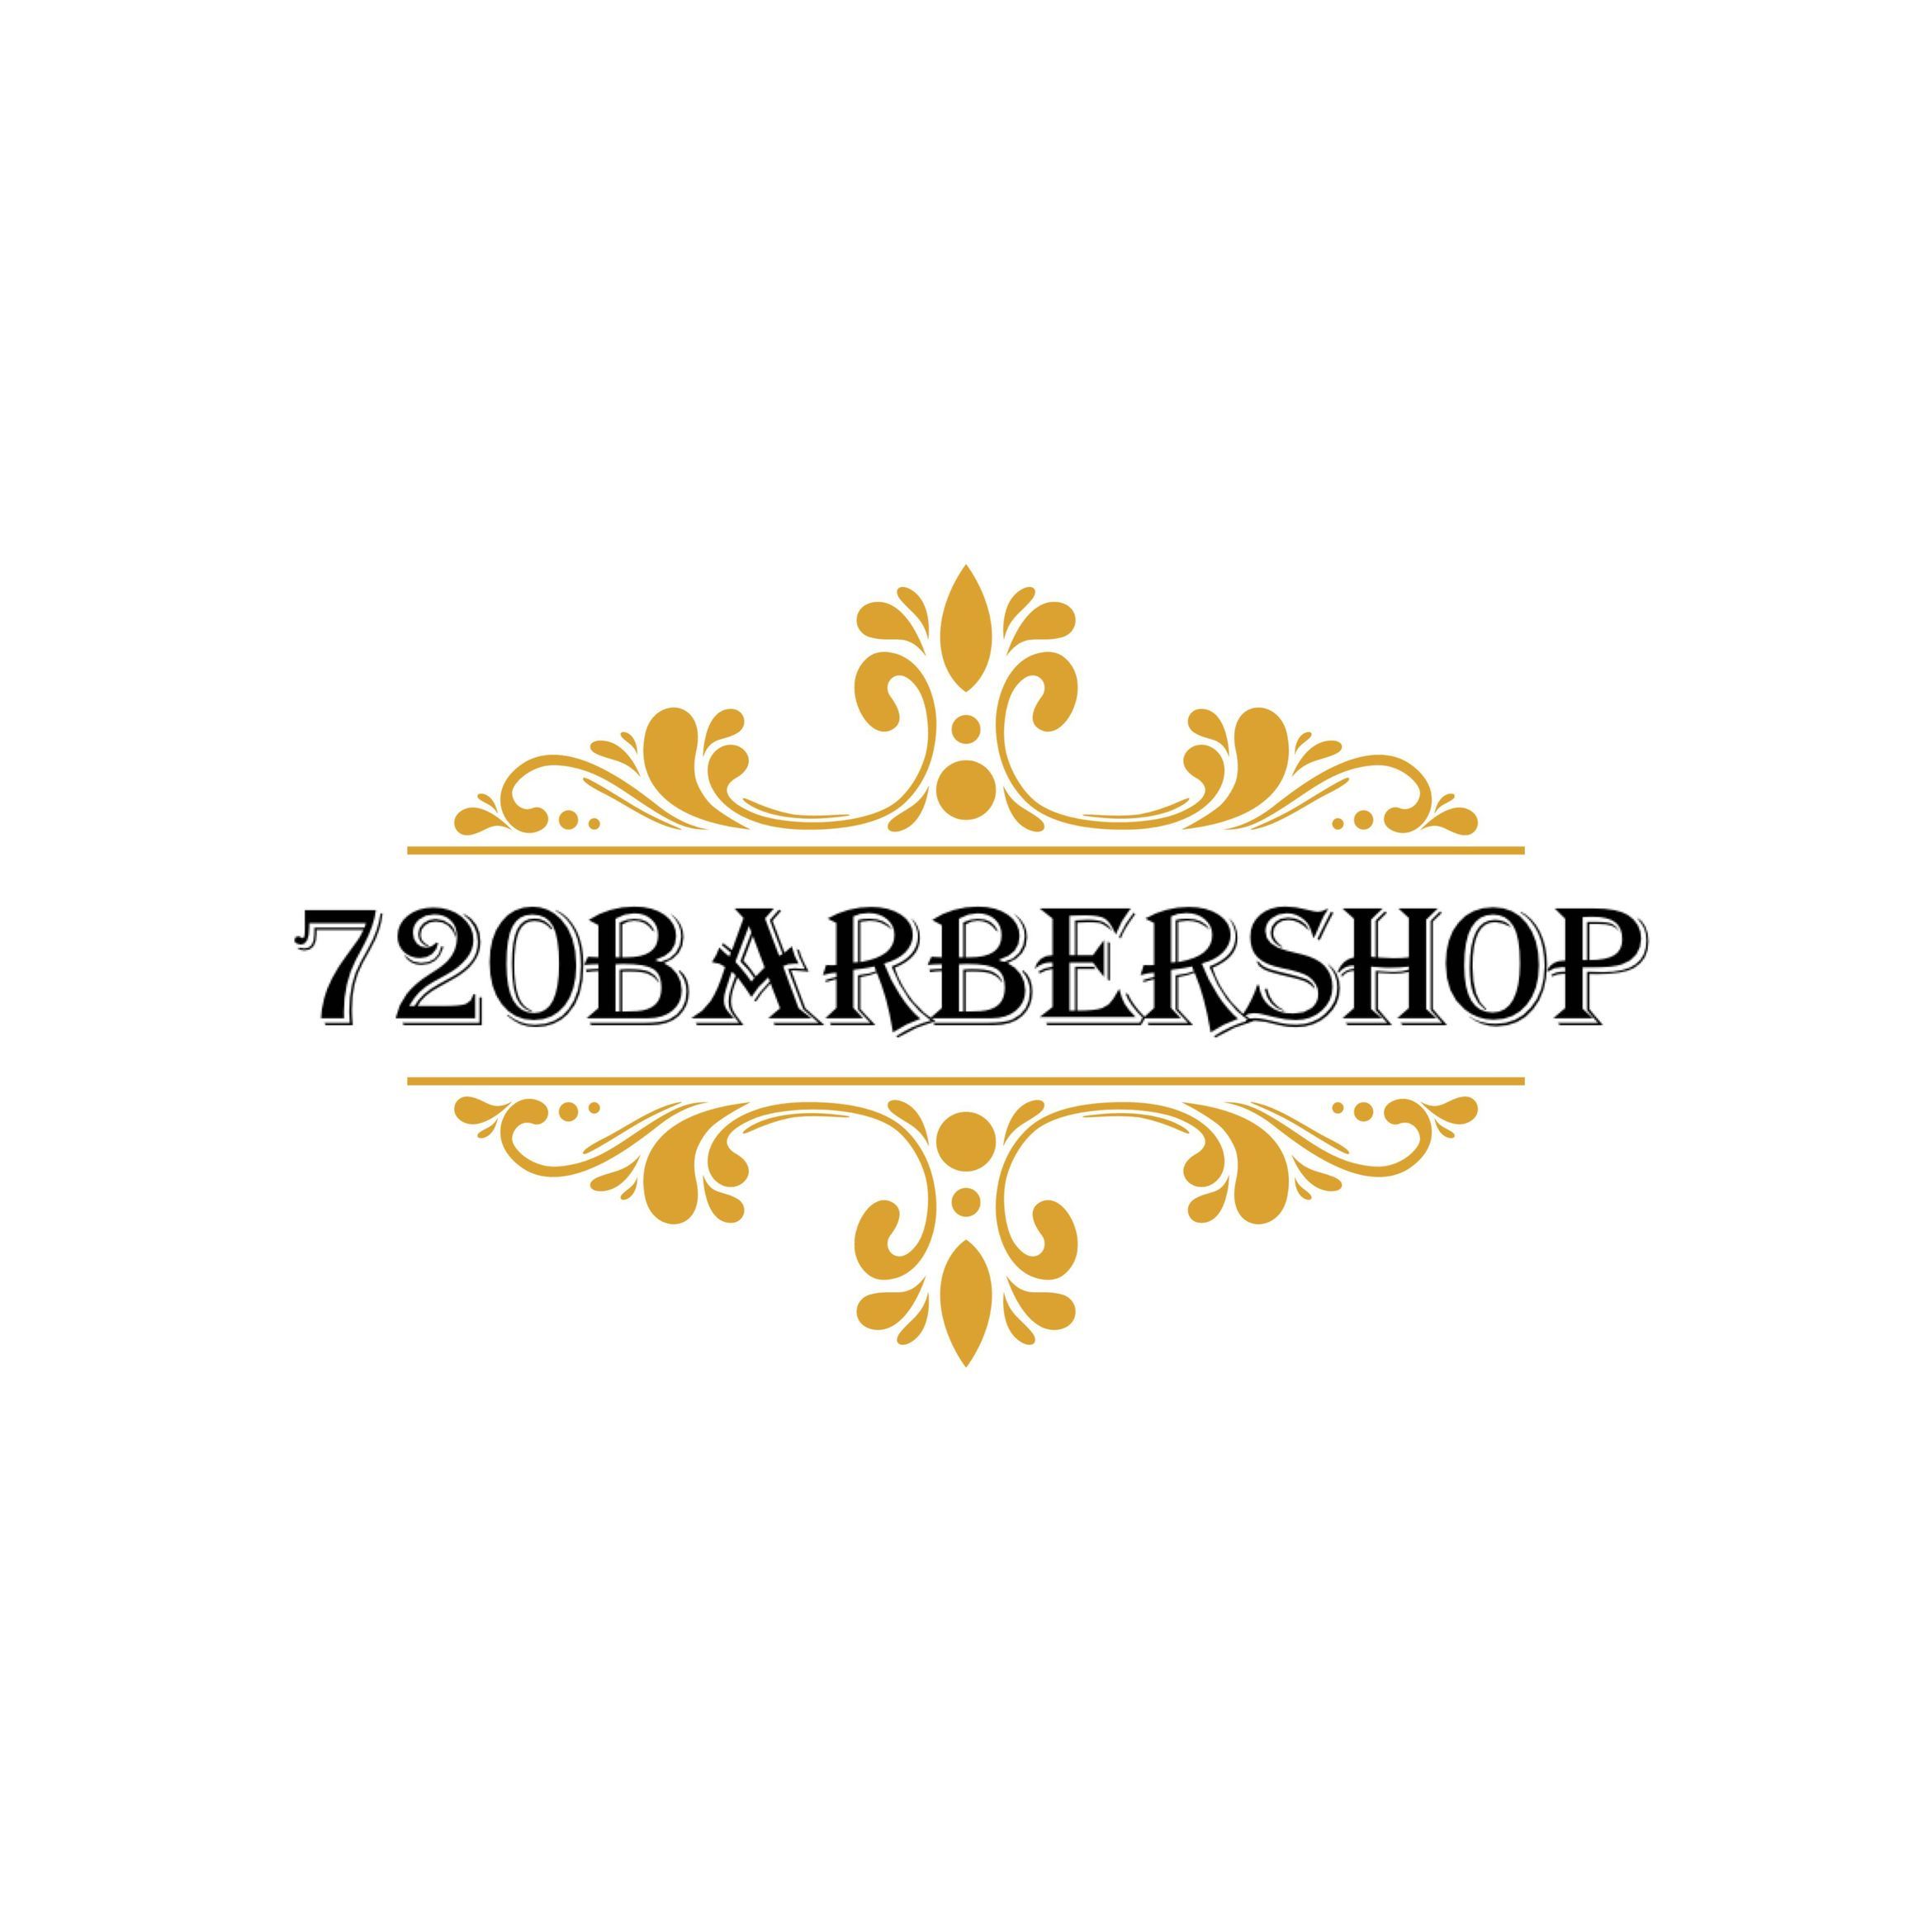 720 Barbershop, 1001 E La Habra Blvd, Unit 3, La Habra, 90631